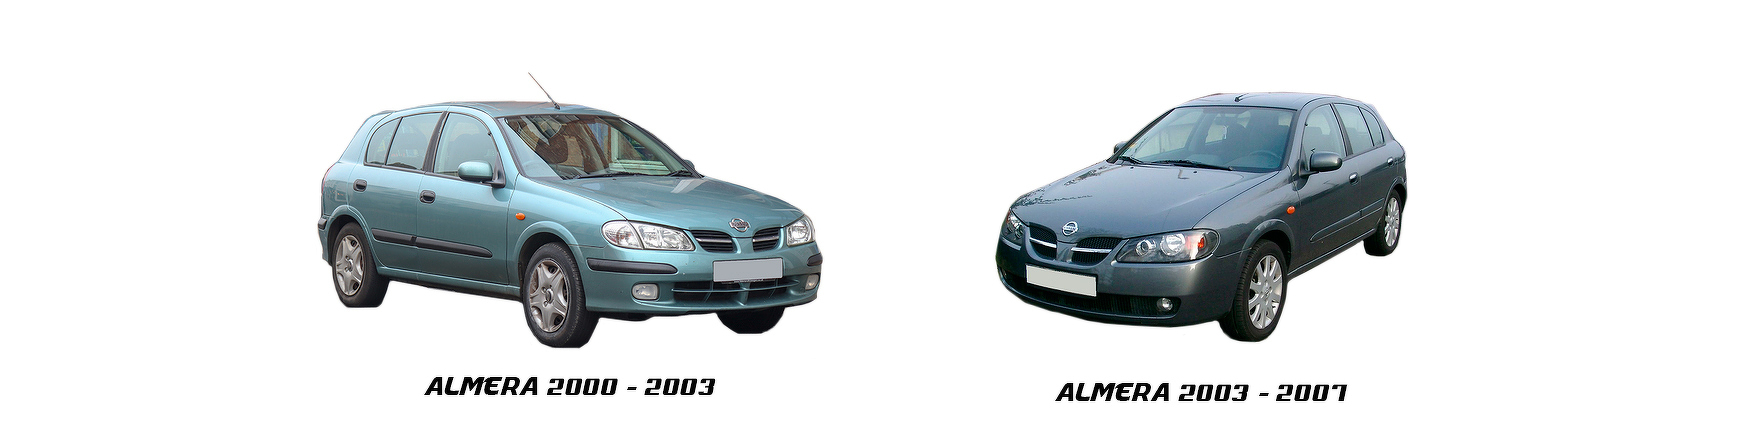 Repuestos de Nissan Almera de 2002, 2003, 2004, 2005, 2006, 2007, 2008